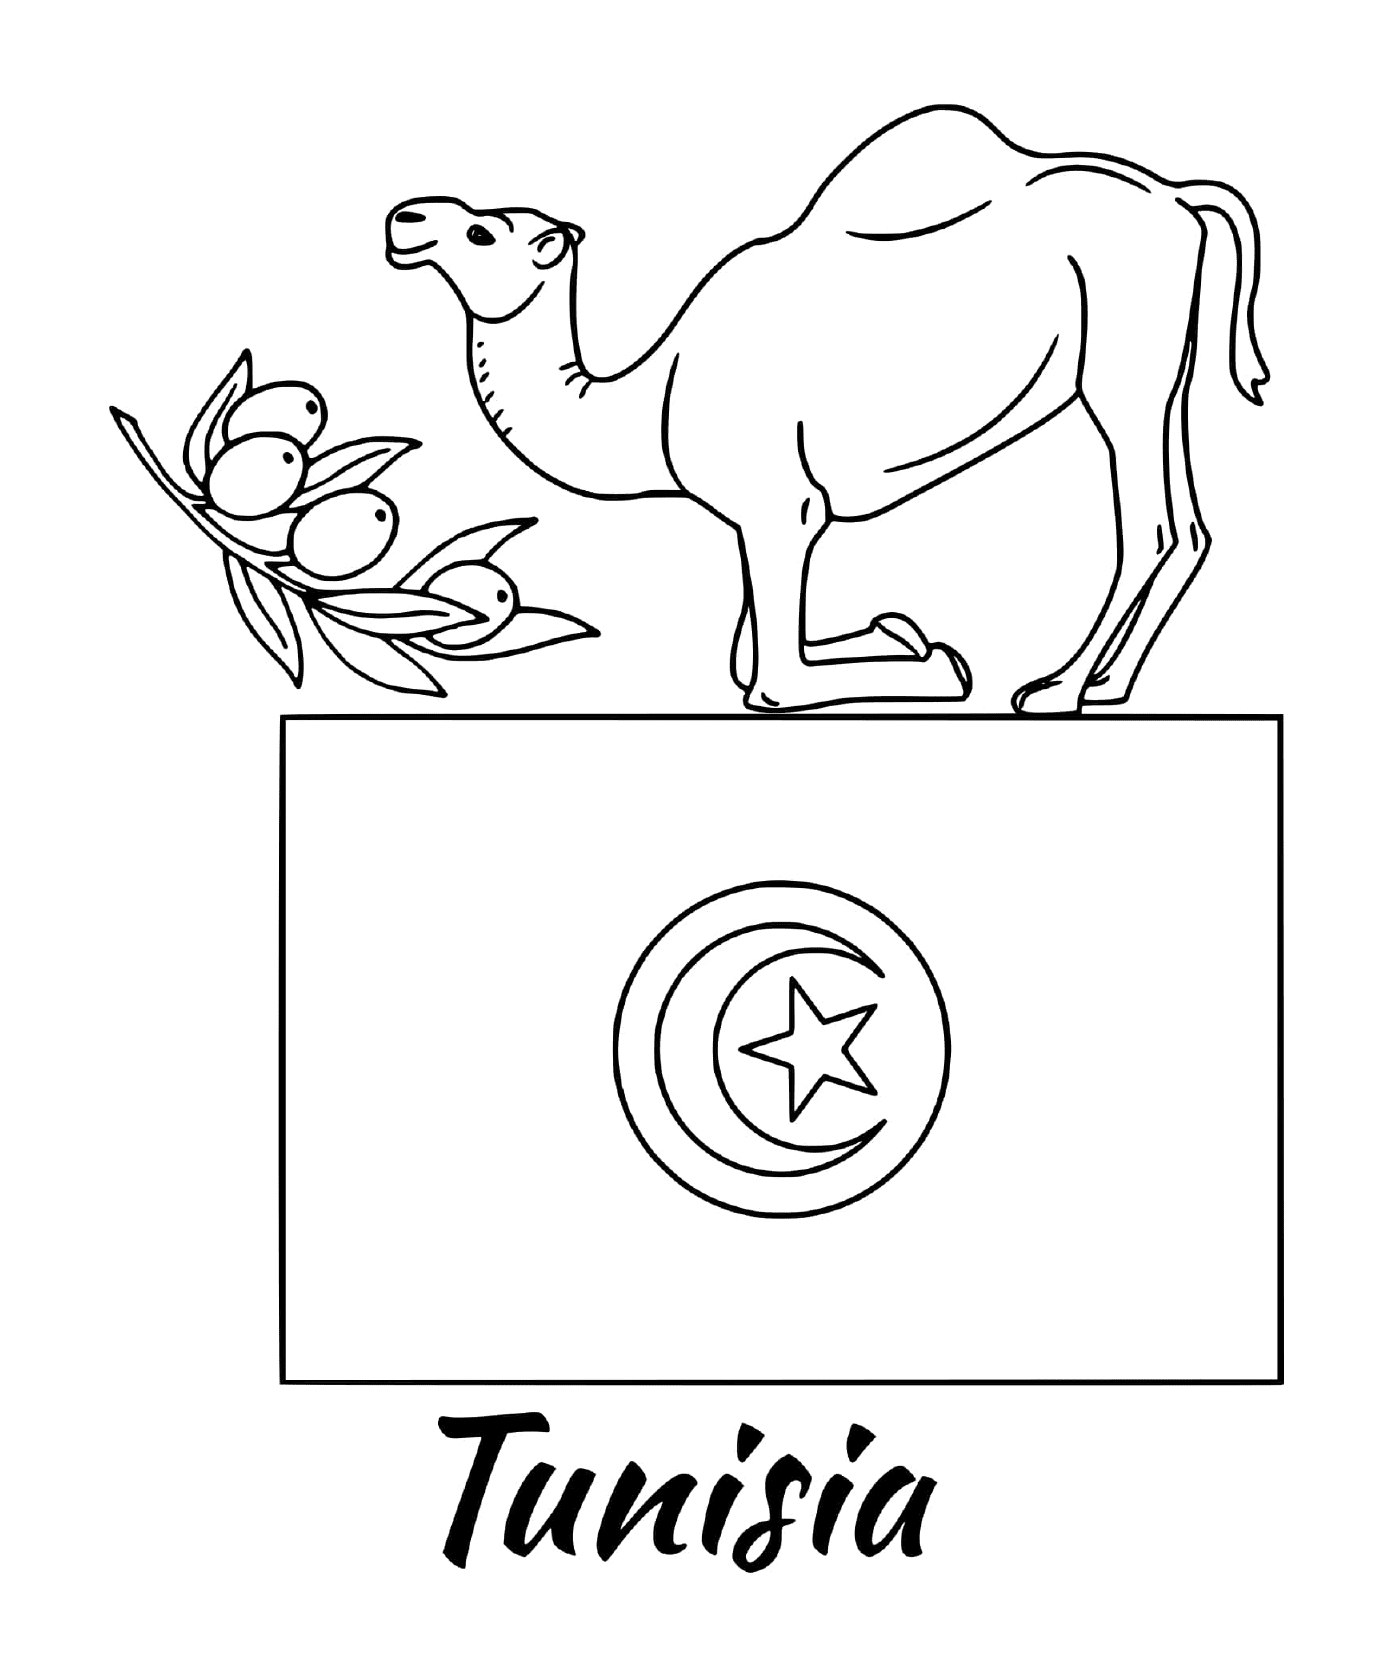  एक ऊँट के साथ ट्यूनीशिया का झंडा 